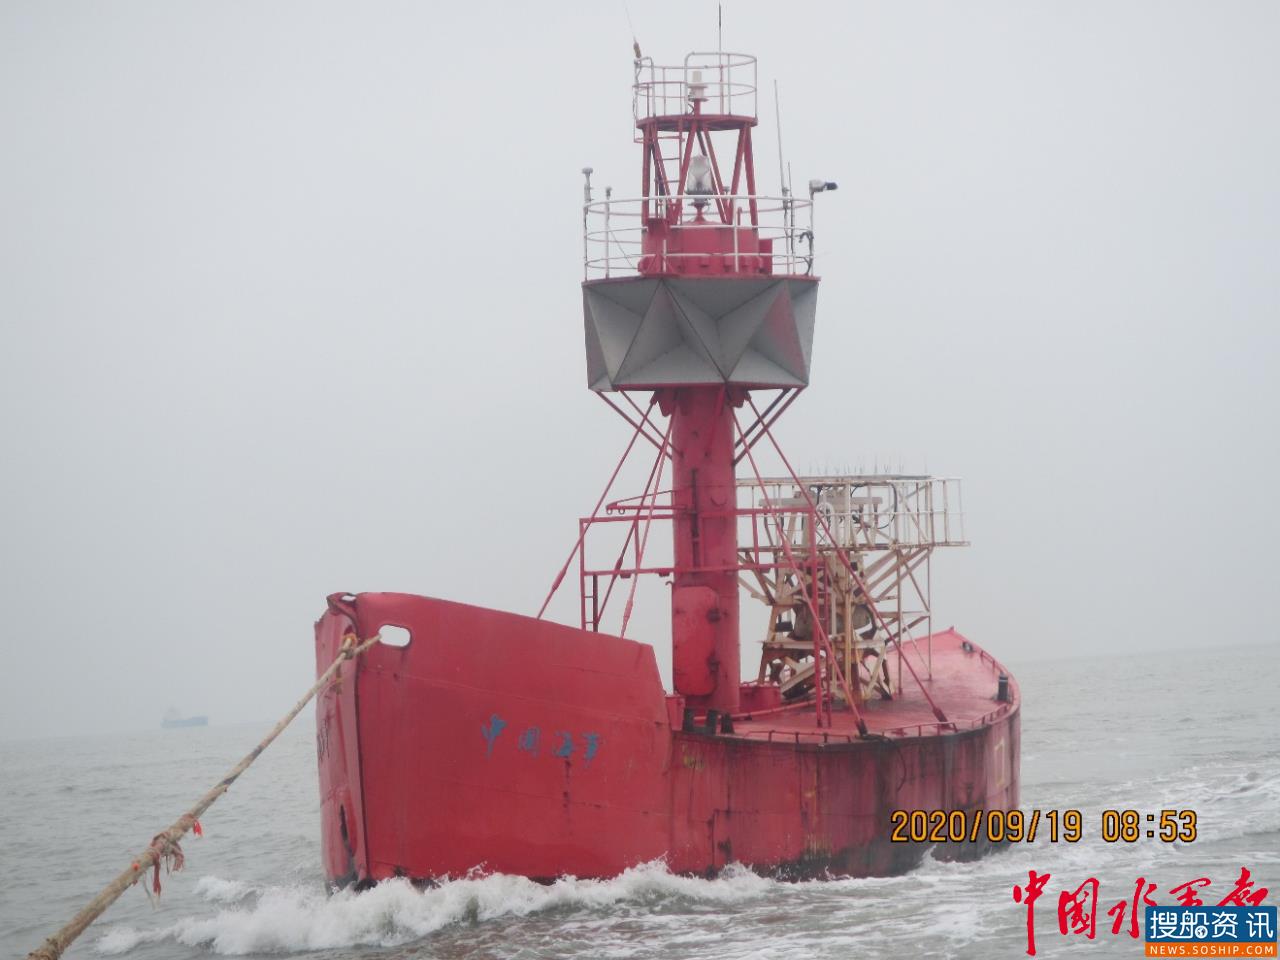 长江口灯船被撞漂失 上海航标处连续作业24小时成功寻回并锁定肇事船舶